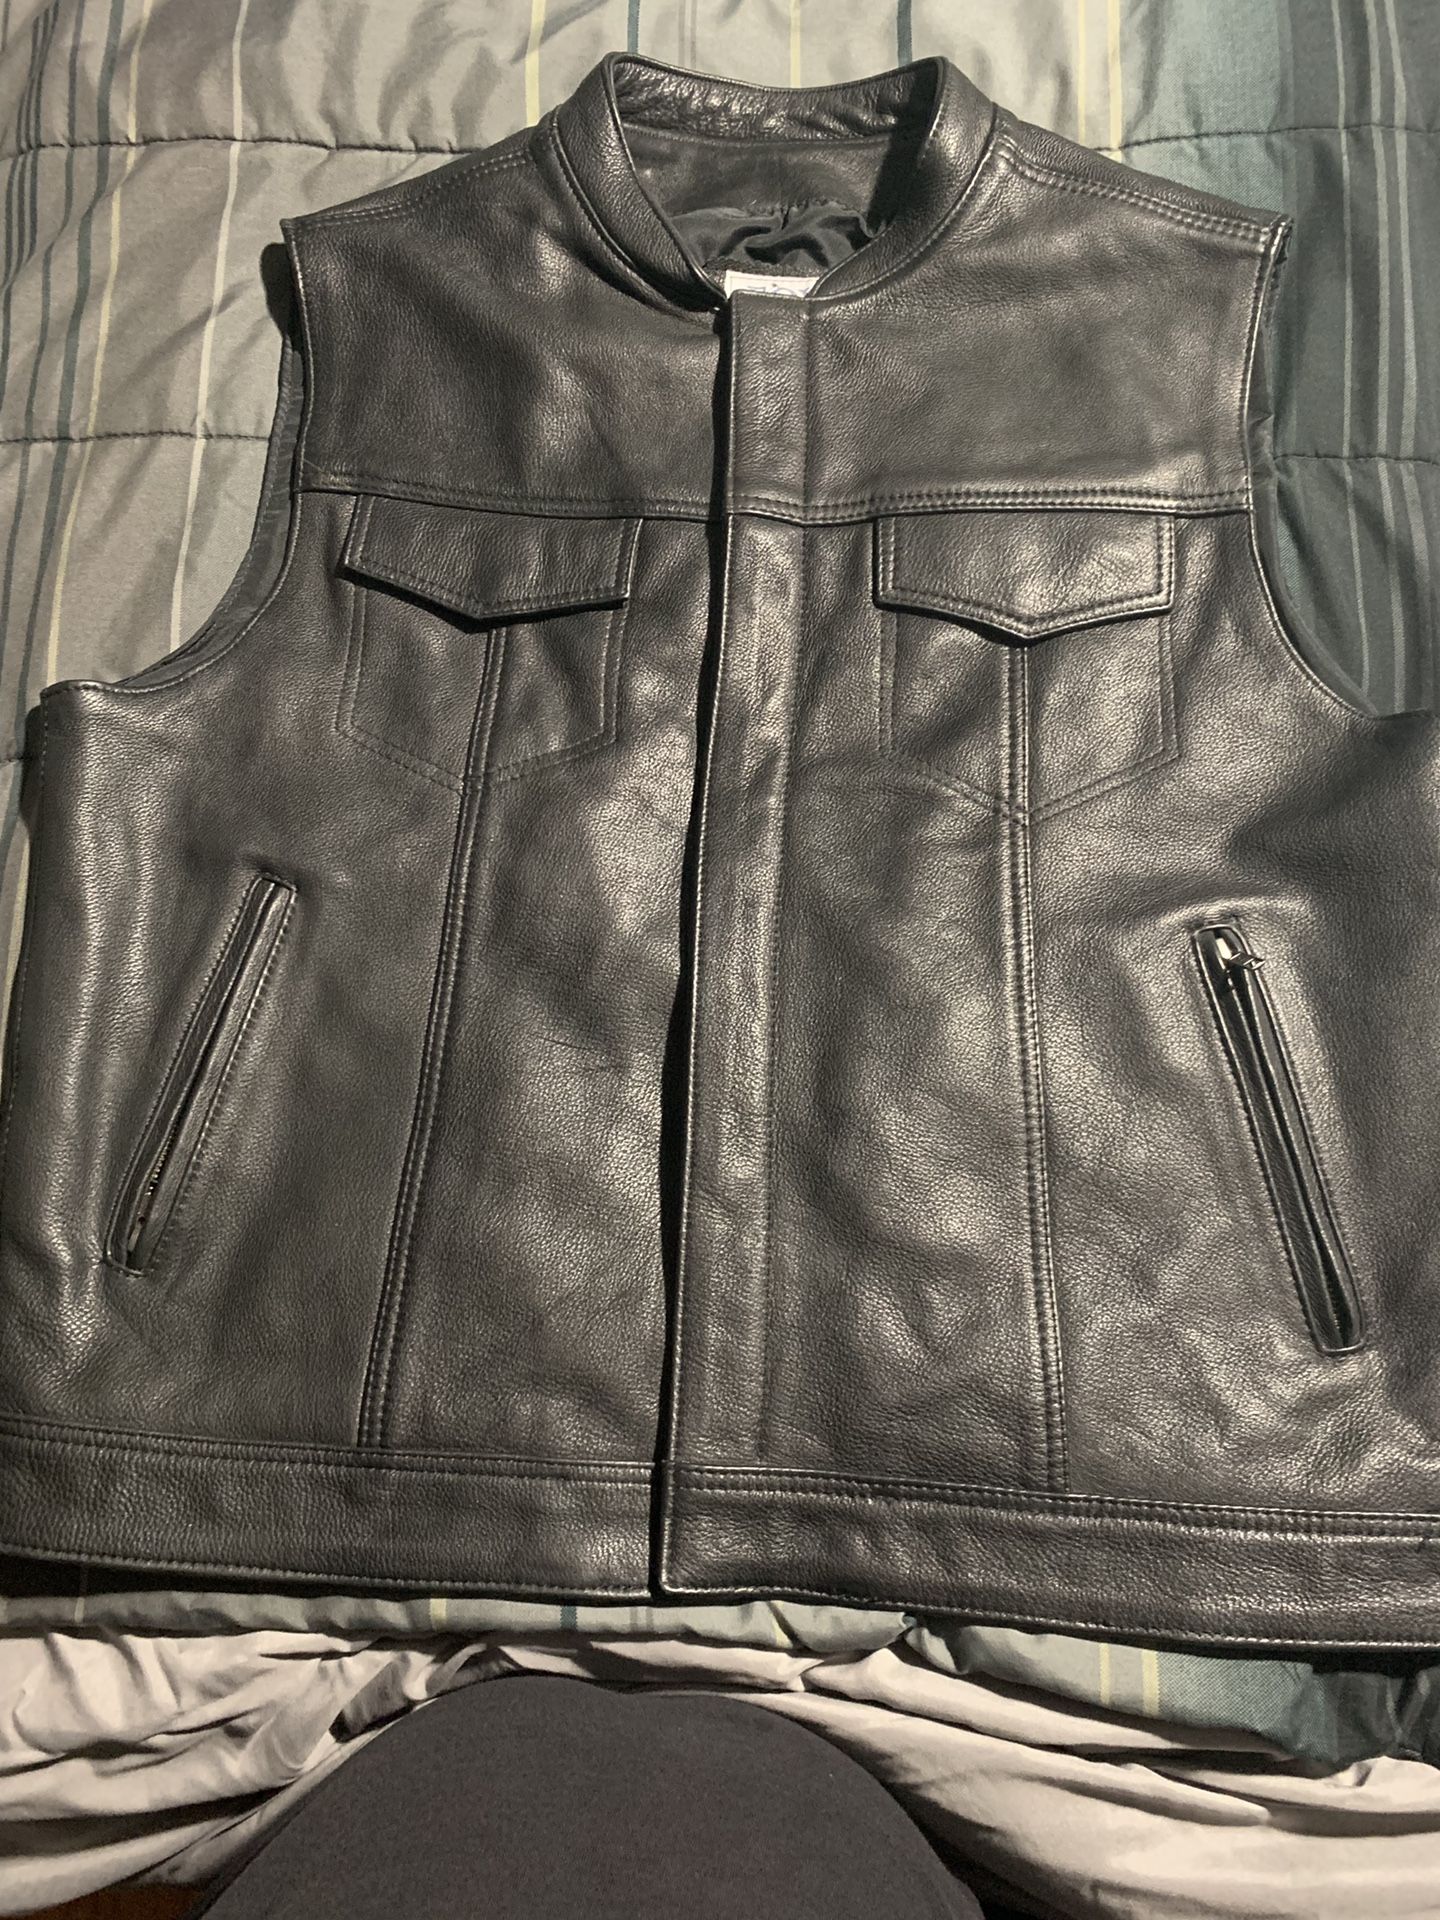 Fox Creek Motorcycle Vest (size 50) like XL